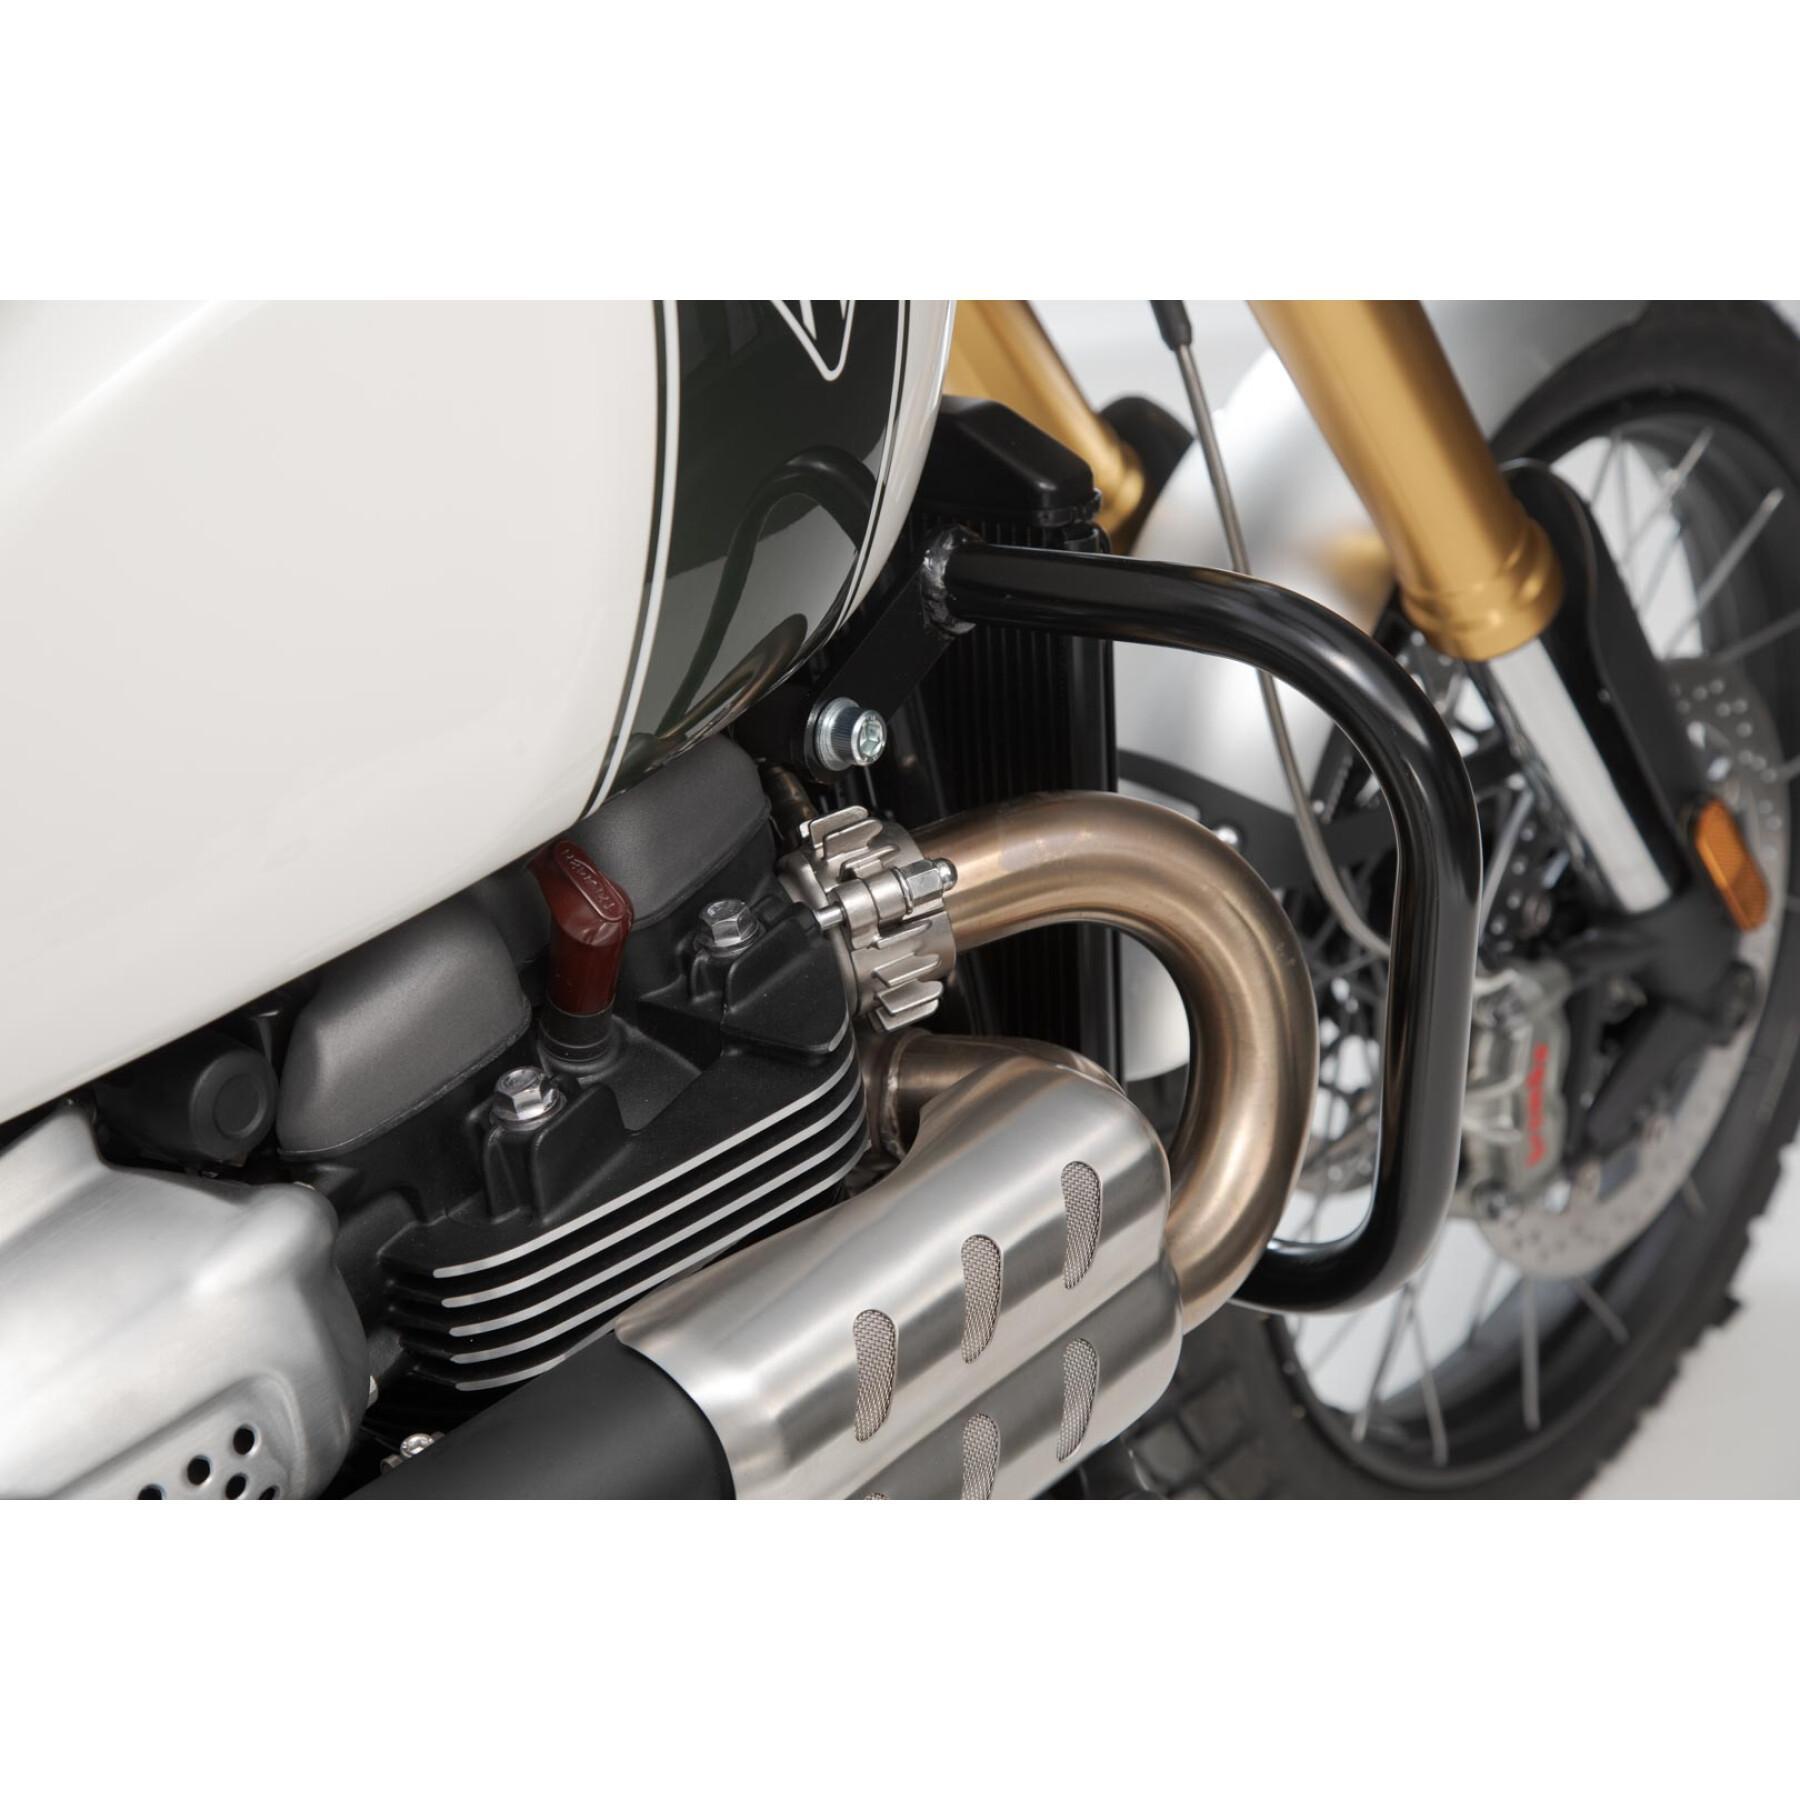 Protecciones para motos Sw-Motech Crashbar Triumph Scrambler 1200 Xc / Xe (18-)